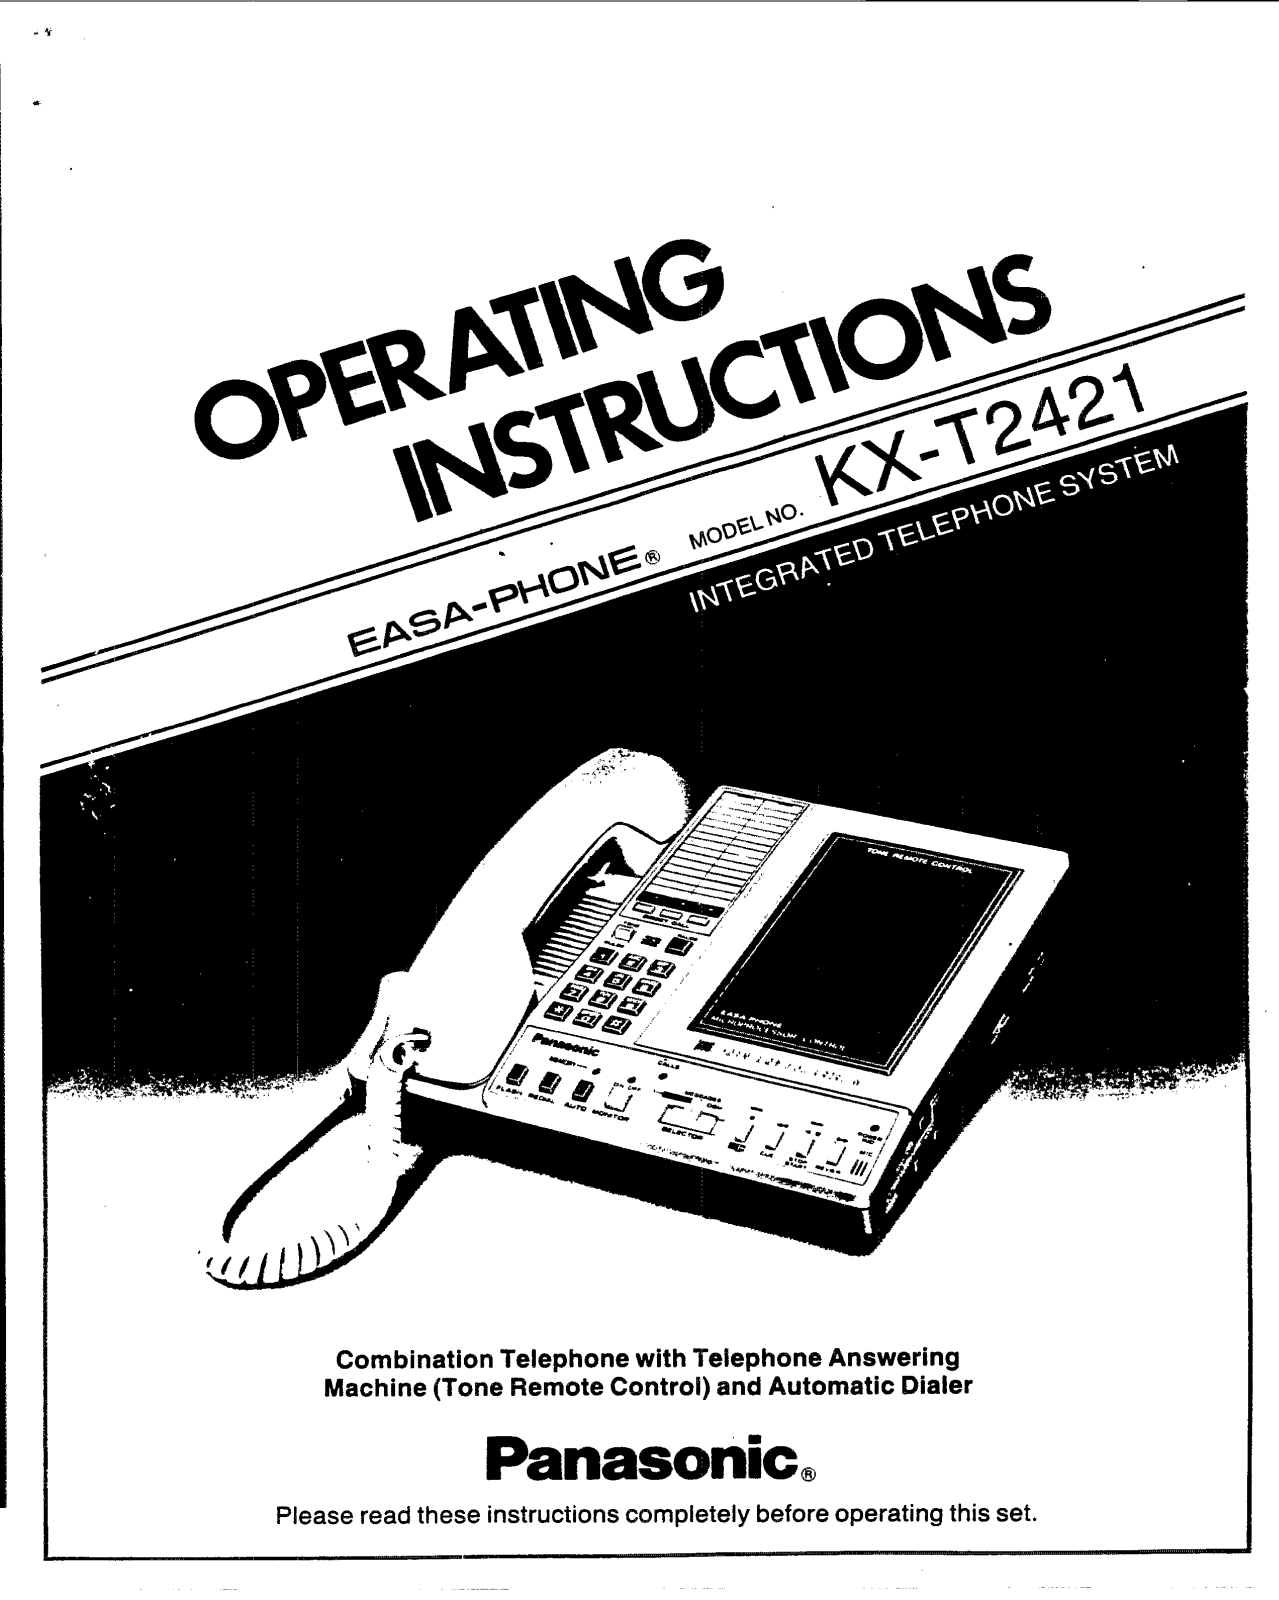 Panasonic kx-t2421 Operation Manual